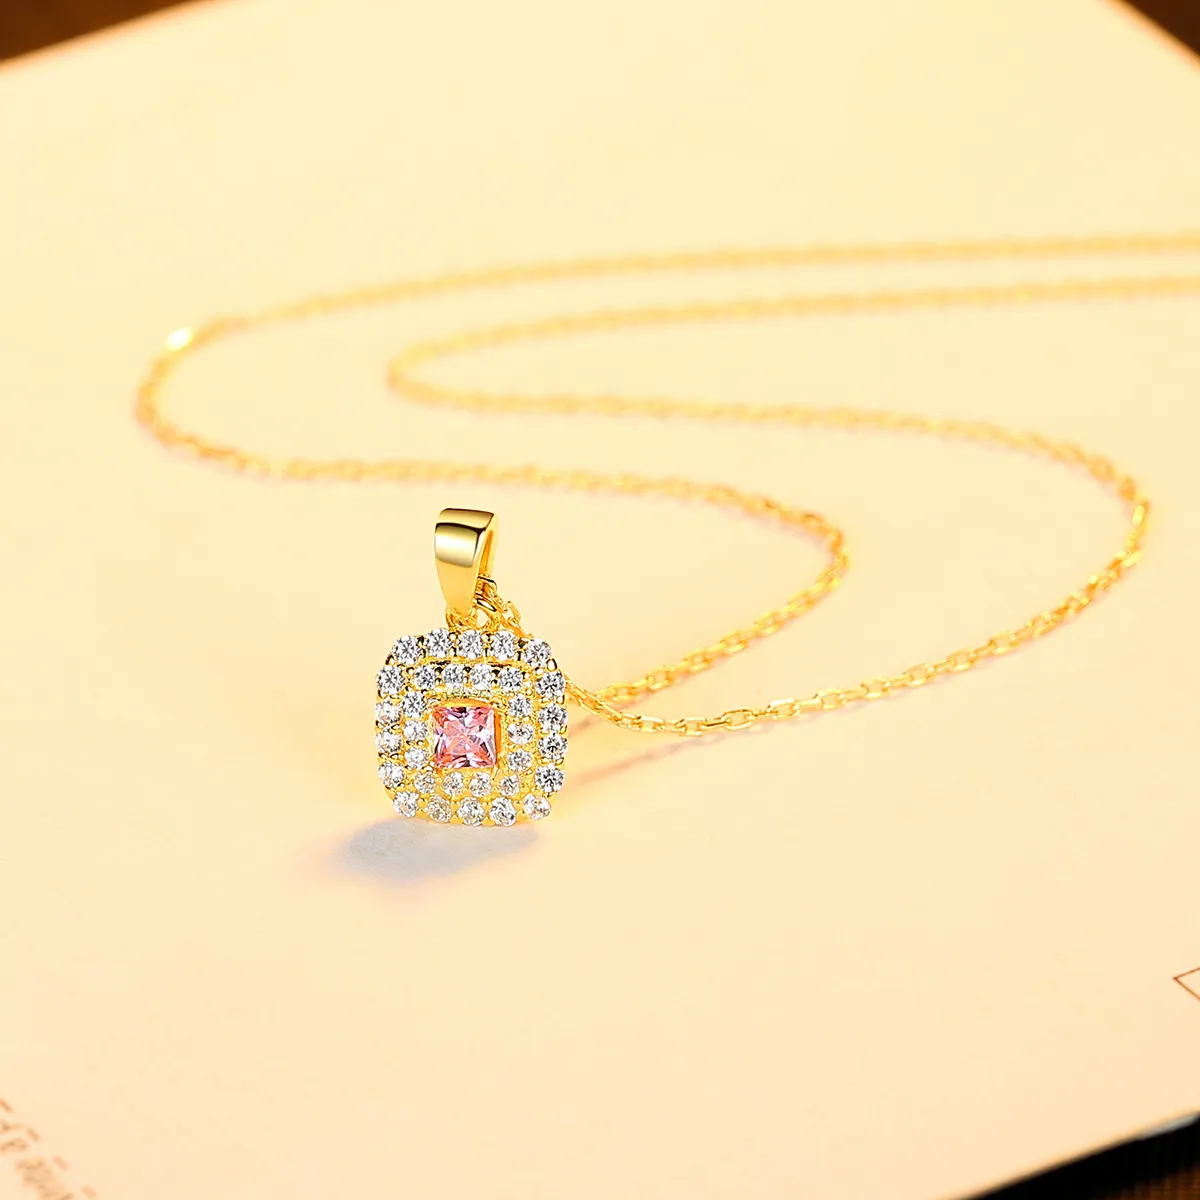 Очаровательные женщины красочные драгоценные подвесные ожерелье моды роскошный бренд супер сверкающий циркон, покрытый 18-километровым золотым ожерельем Женщина S925 Серебряные воротнички.